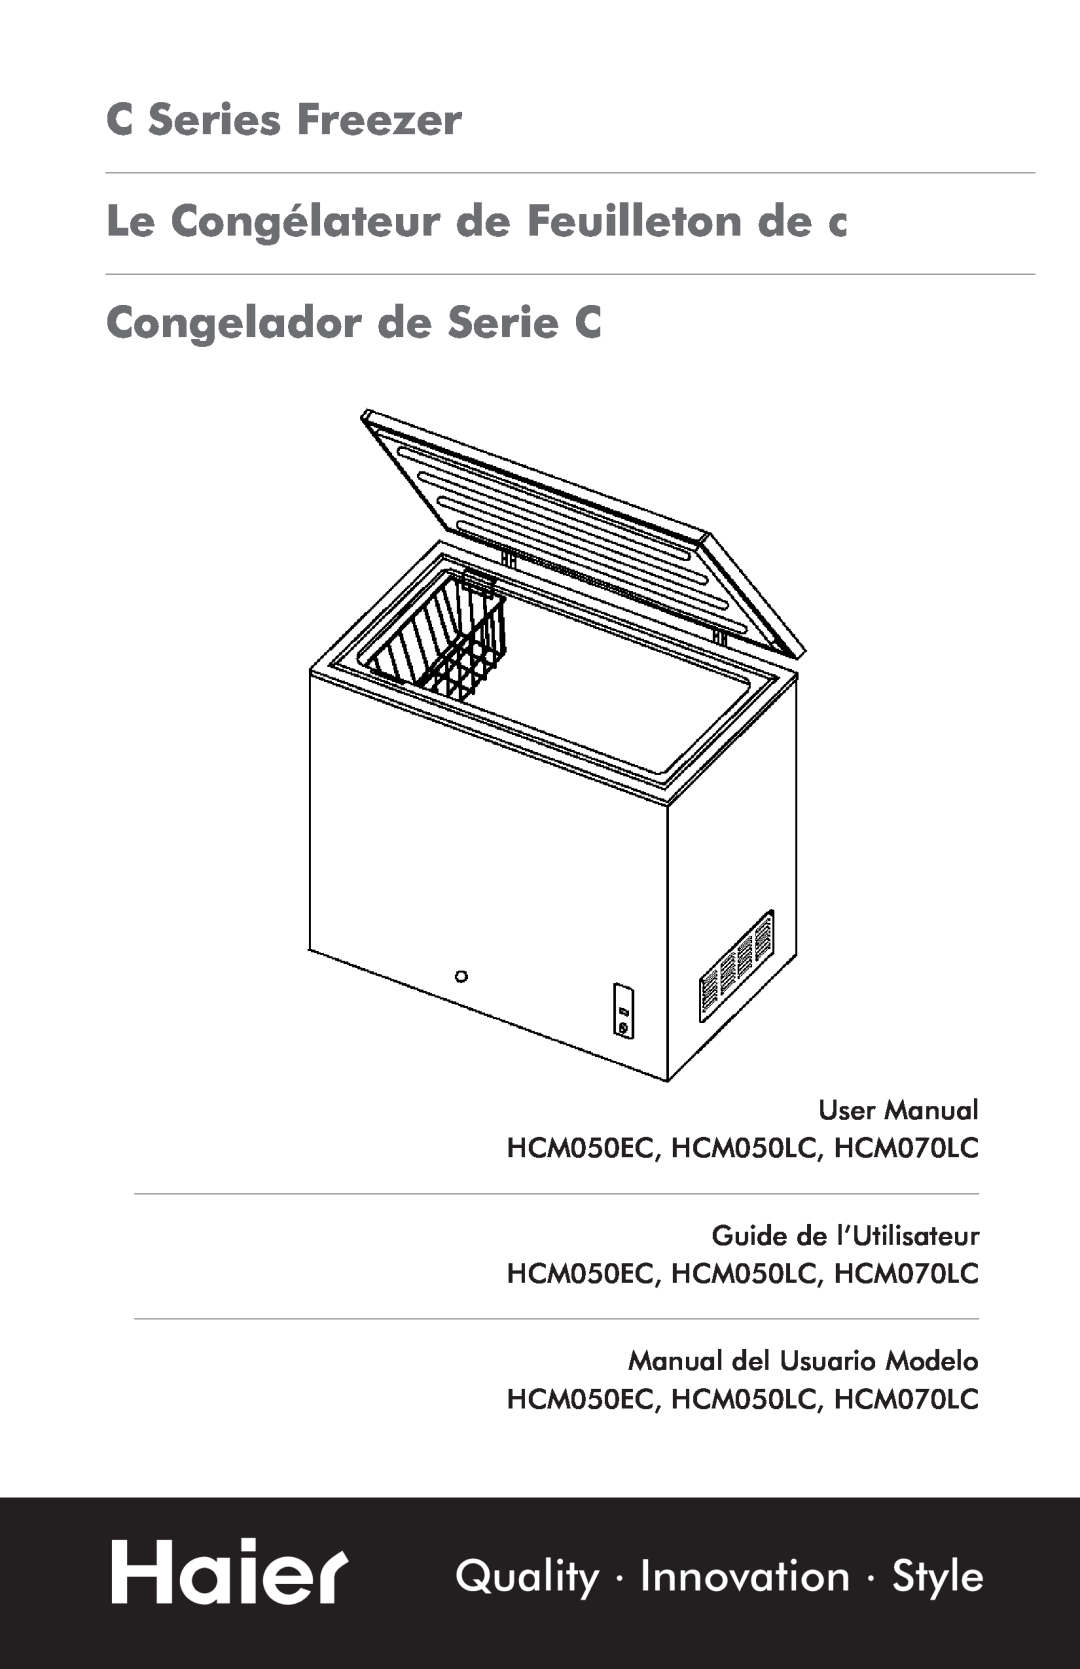 Haier HCM070LC, HCM050EC, HCM050LC user manual C Series Freezer, Le Congélateur de Feuilleton de c, Congelador de Serie C 